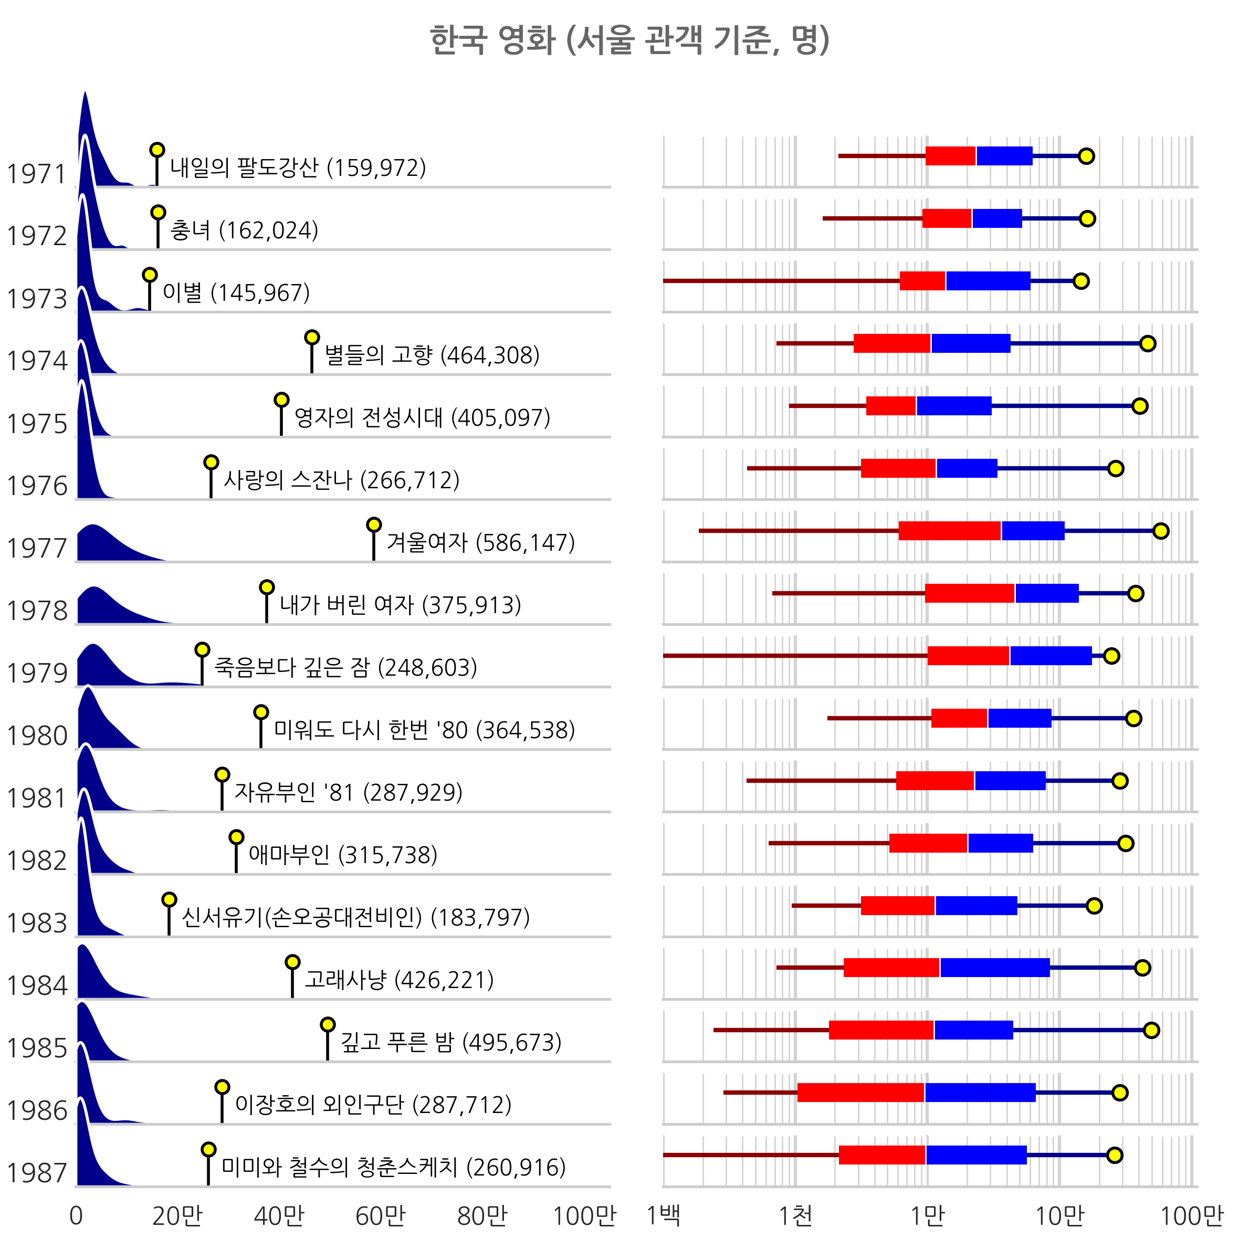 1971-1987년 한국영화 서울 관객 기준 분포도, 하단 상세 내용 참조